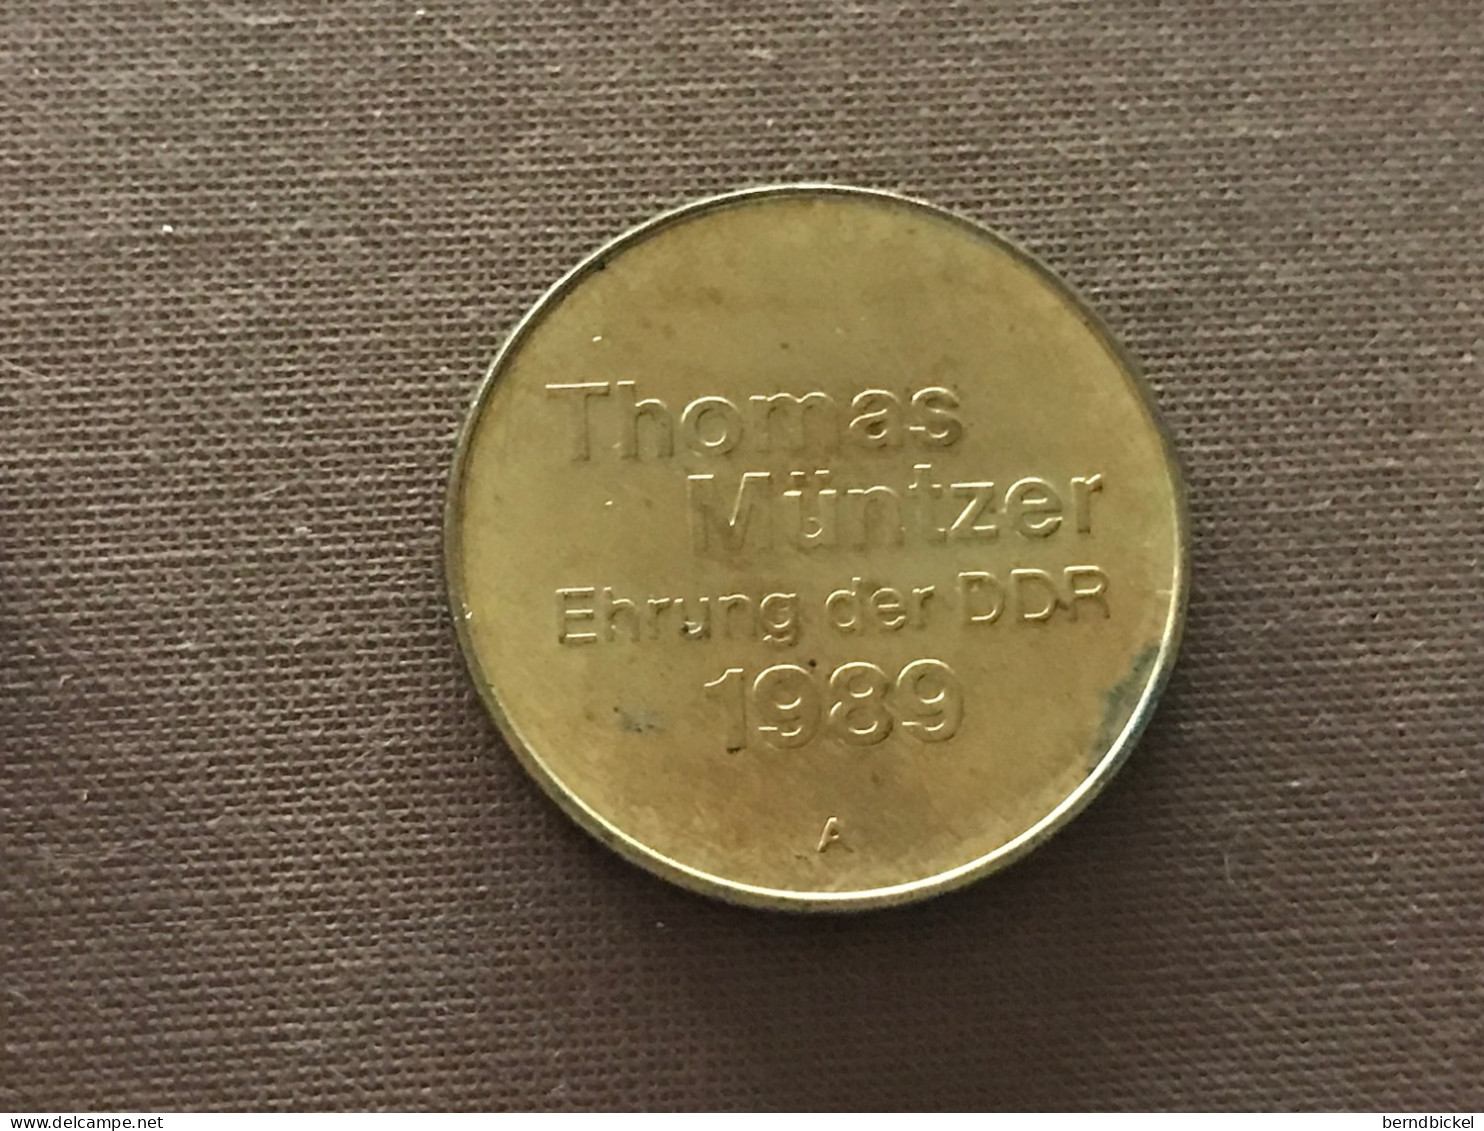 Münze Münzen Medaille DDR Thomas Müntzer Ehrung Der DDR 1989 - Monarchia/ Nobiltà